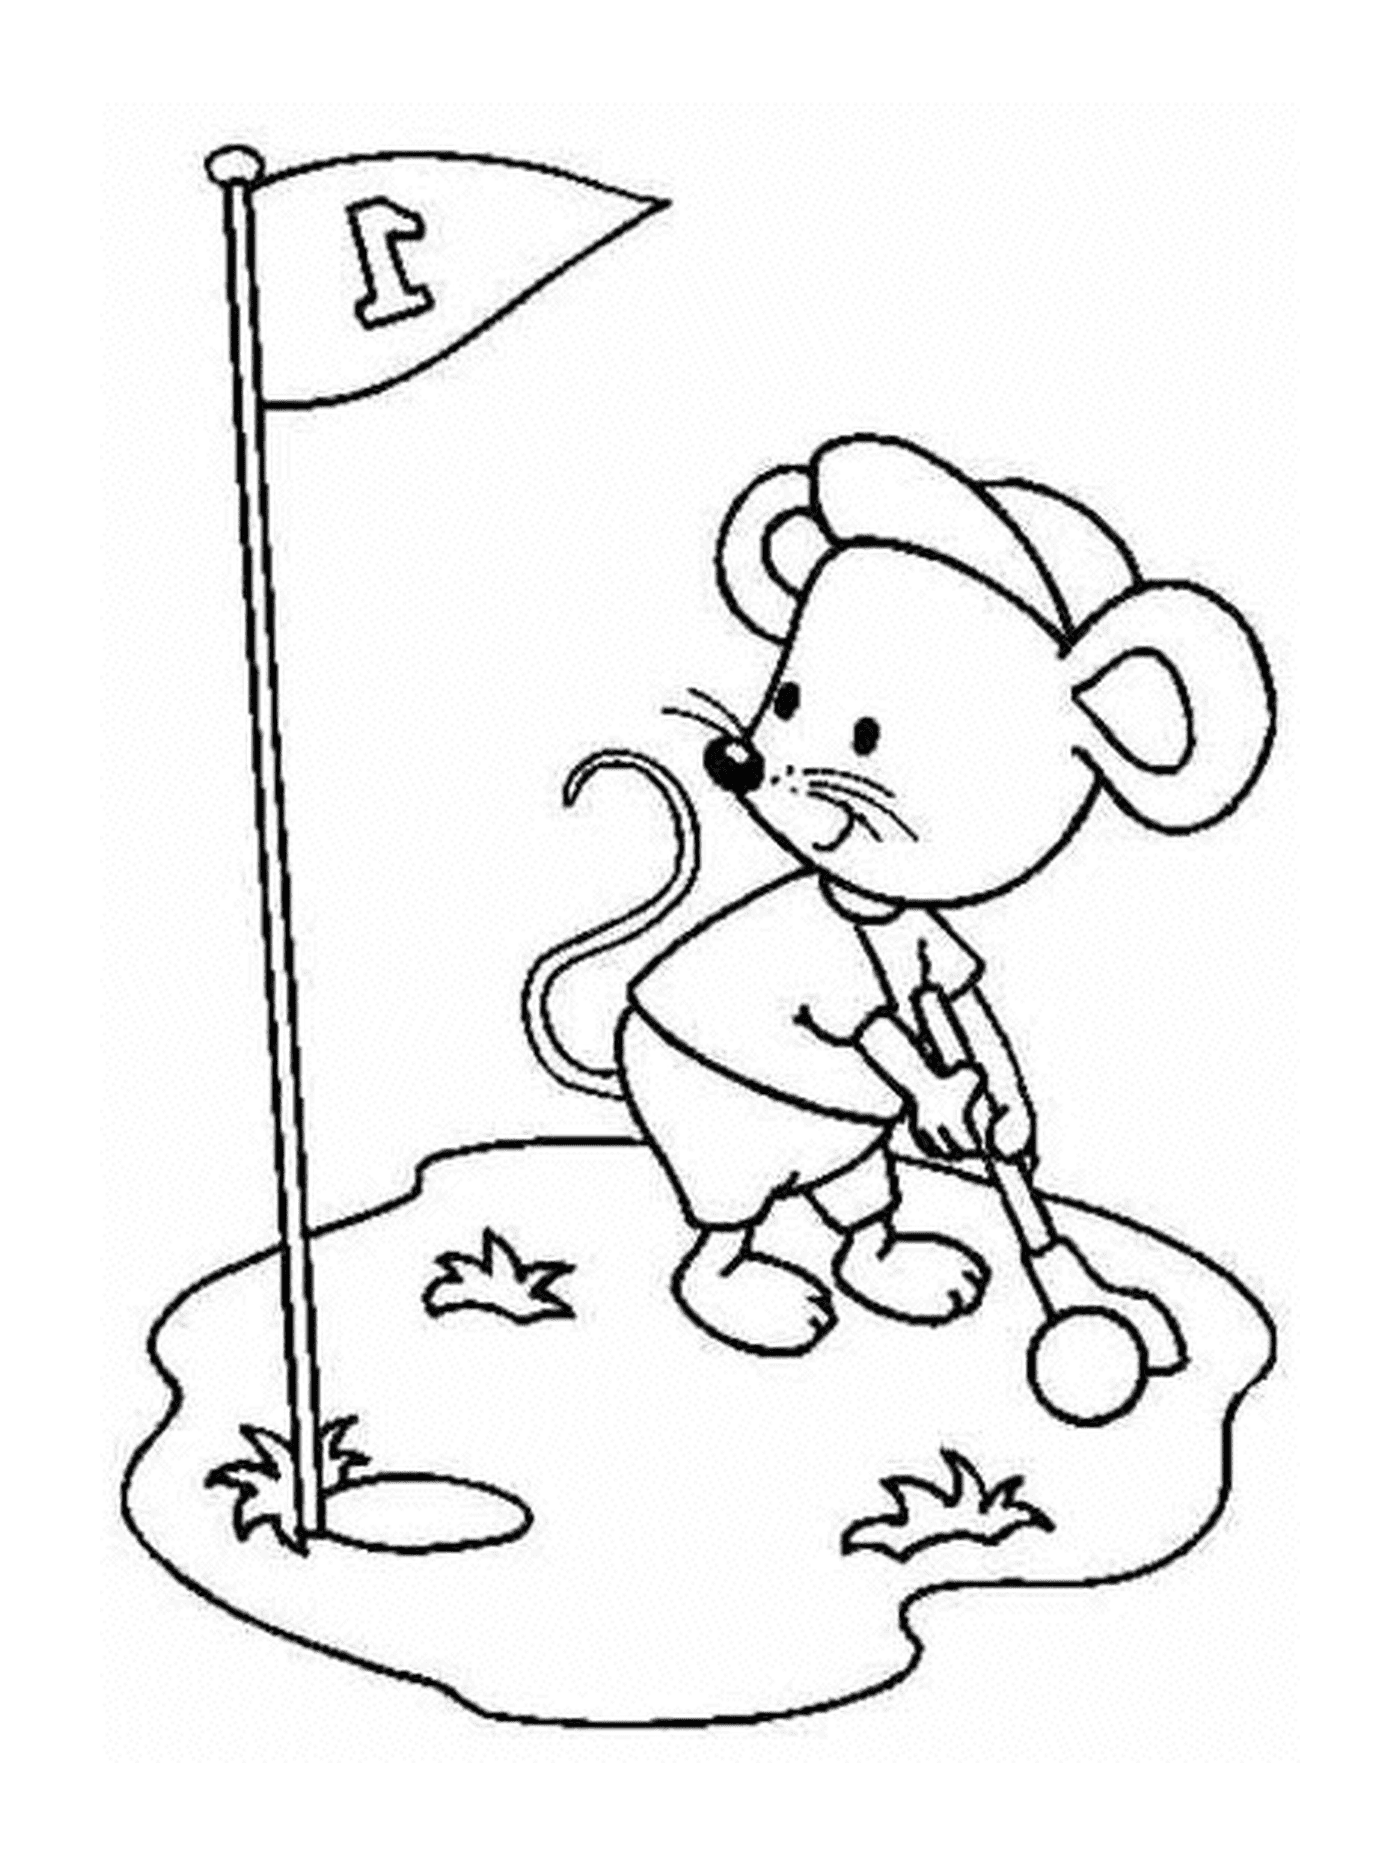  Un topo che gioca a golf 